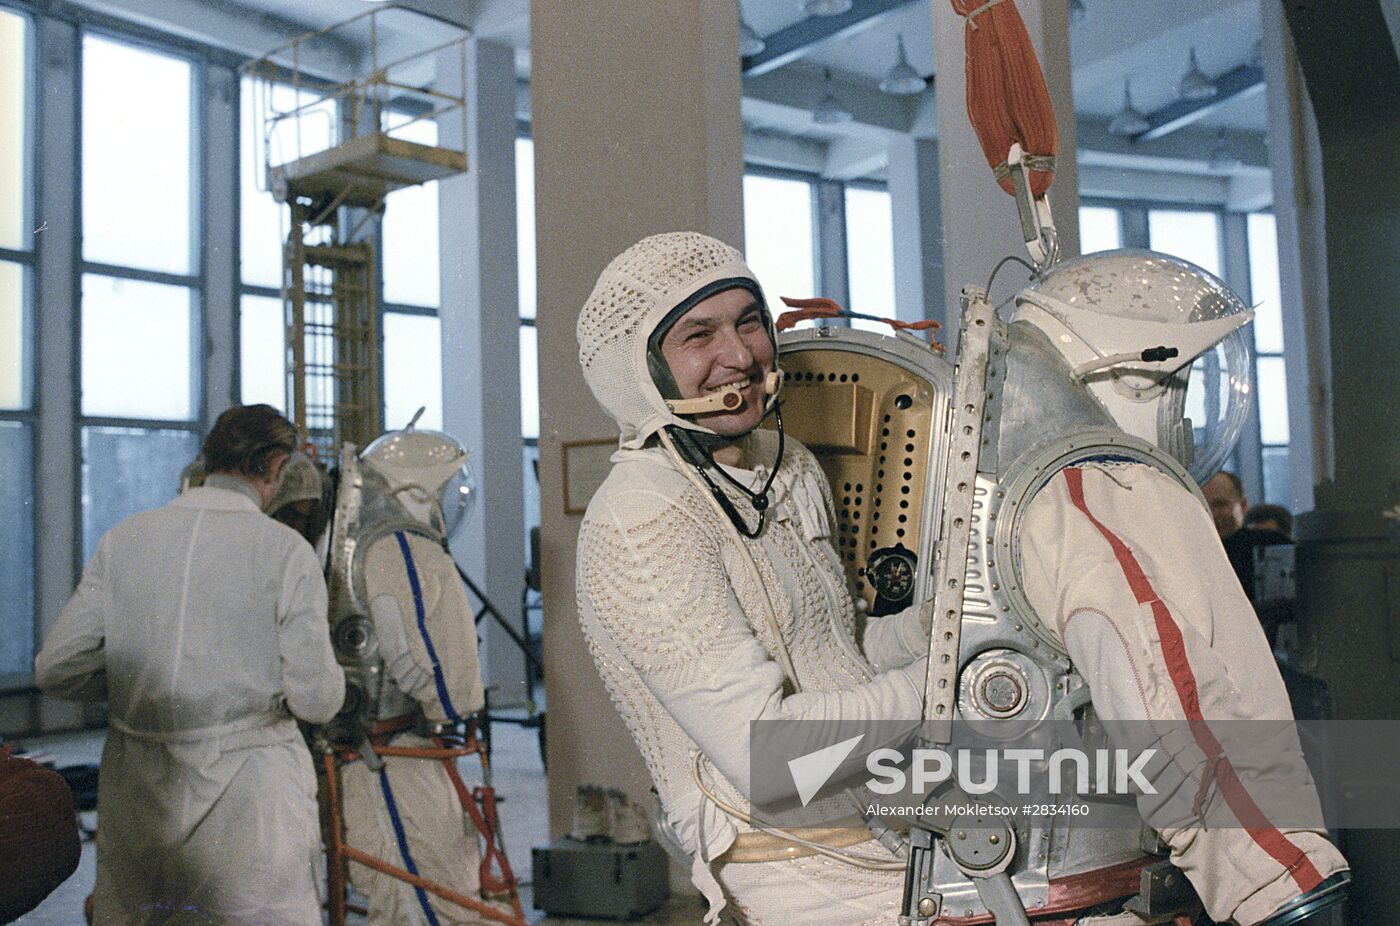 Soviet cosmonauts Titov and Serebrov